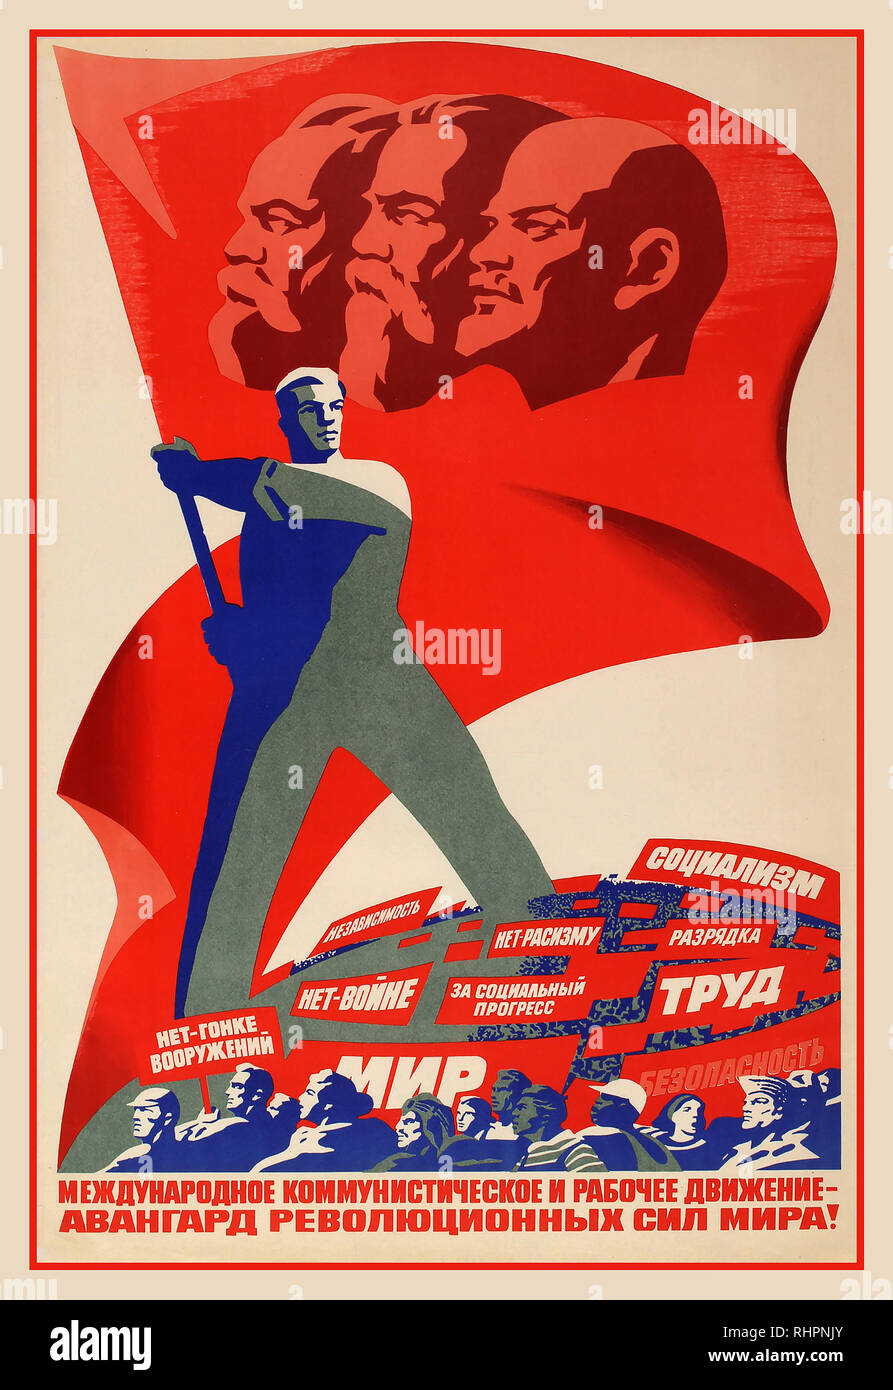 Affiche de propagande soviétique Vintage : mouvement ouvrier et Communiste International, à l'avant du prolétariat mondial. Affiche illustre un travailleur qui agitait un drapeau rouge géant célébrant Lénine, Engels et Marx. La Russie 1982 Artiste : C. Briskin Banque D'Images